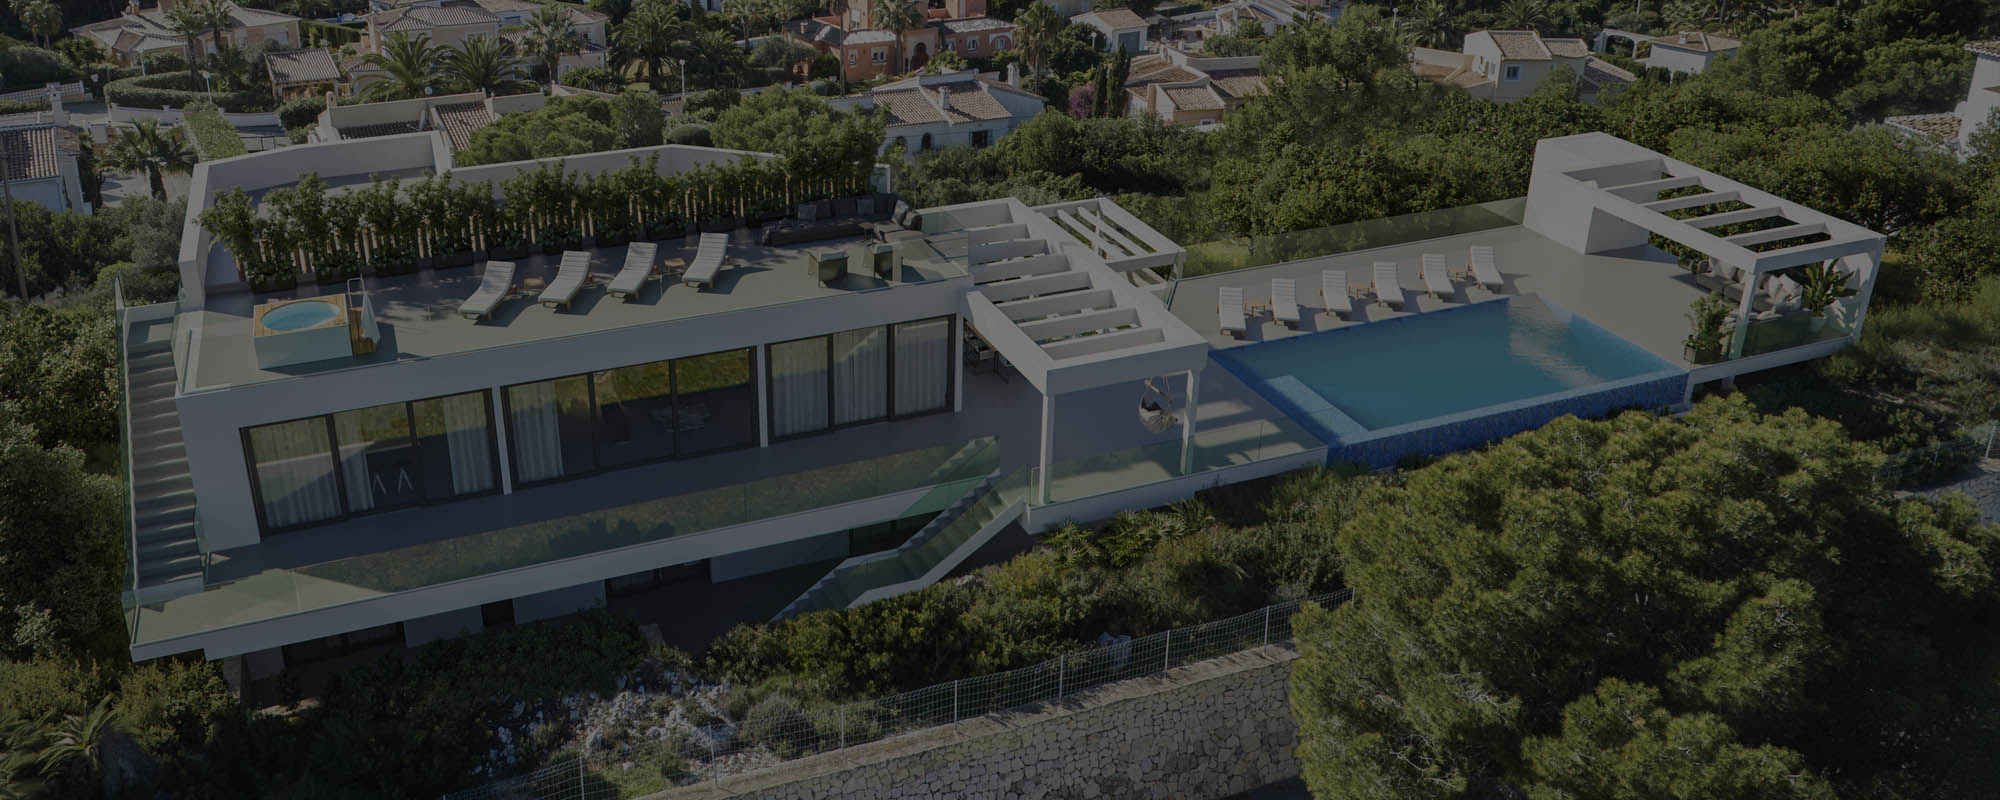 Render 3D de una vivienda unifamiliar de lujo a vista de dron